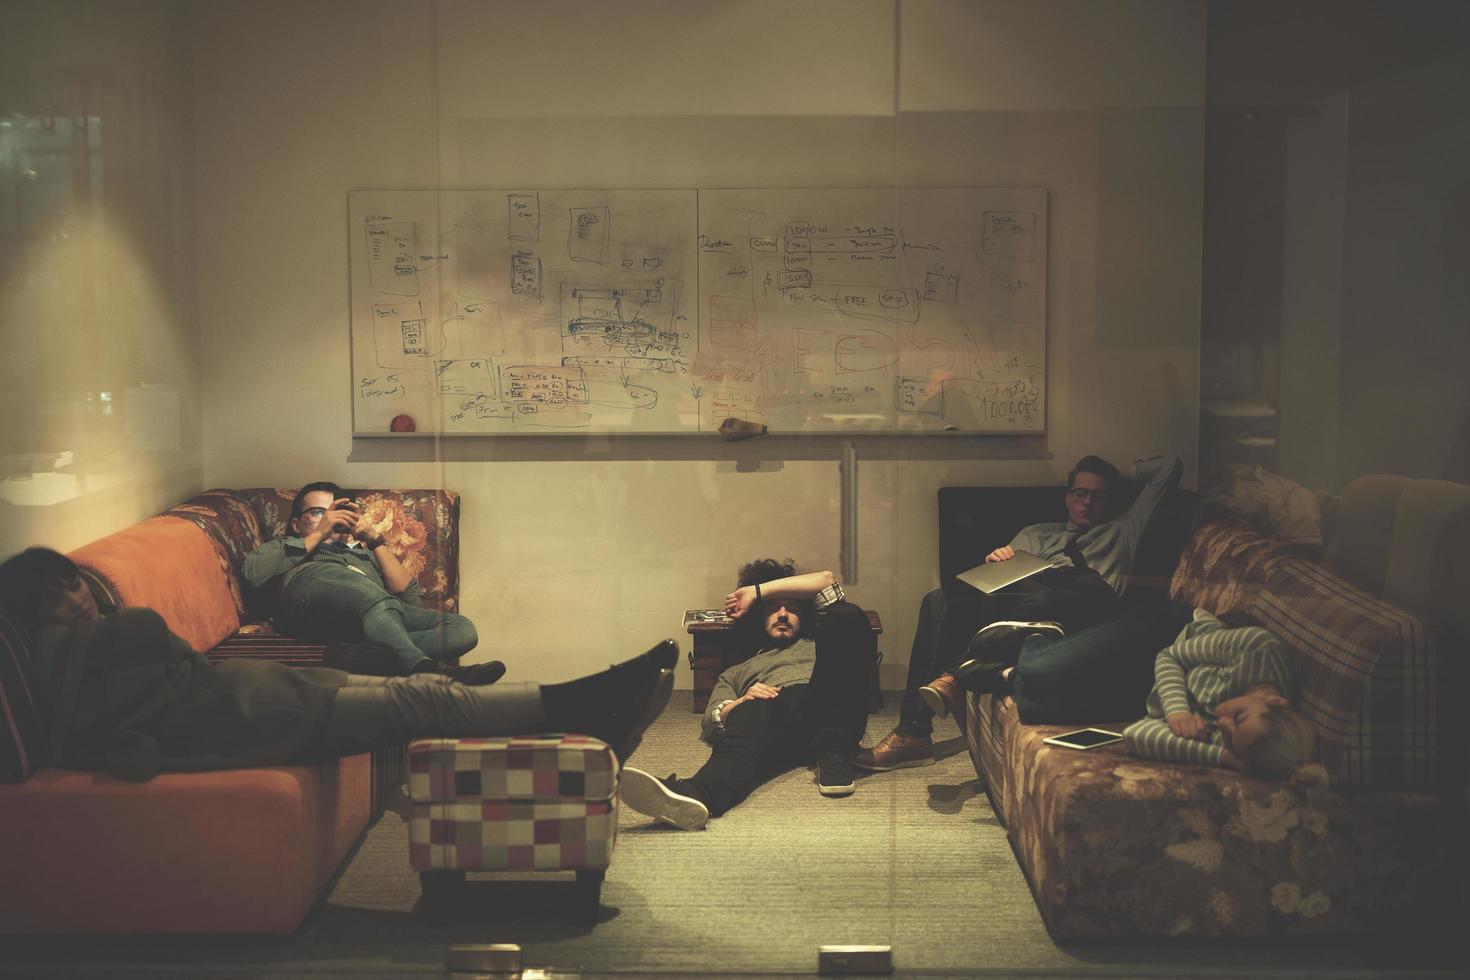 softwareentwickler, die auf dem sofa im kreativen startbüro schlafen foto